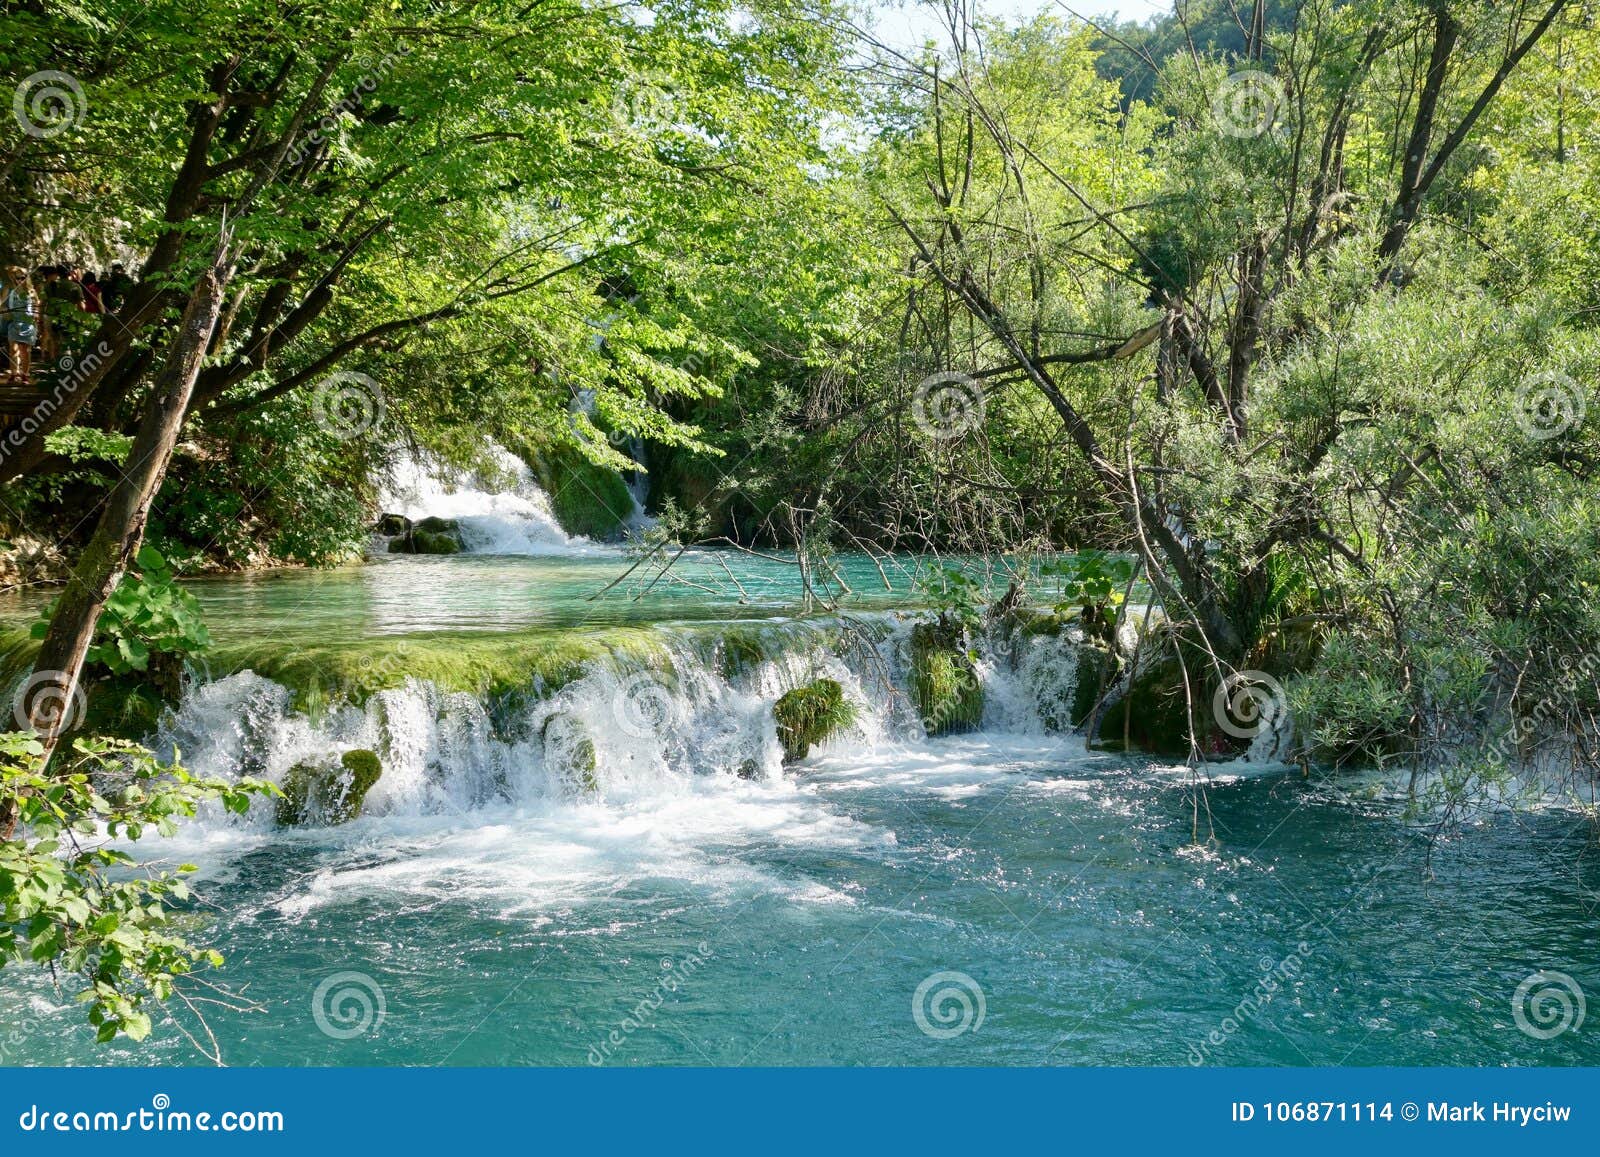 plitvice lakes croatia serene natural waterfalls